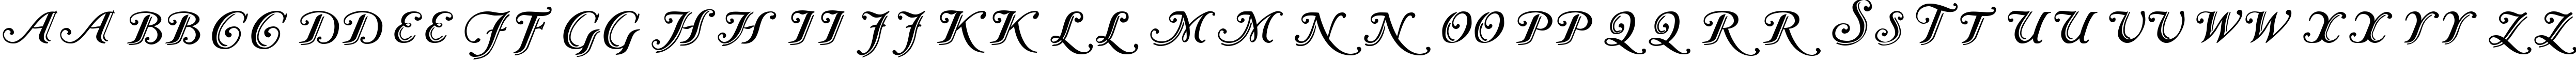 Пример написания английского алфавита шрифтом Caslon Calligraphic Initials